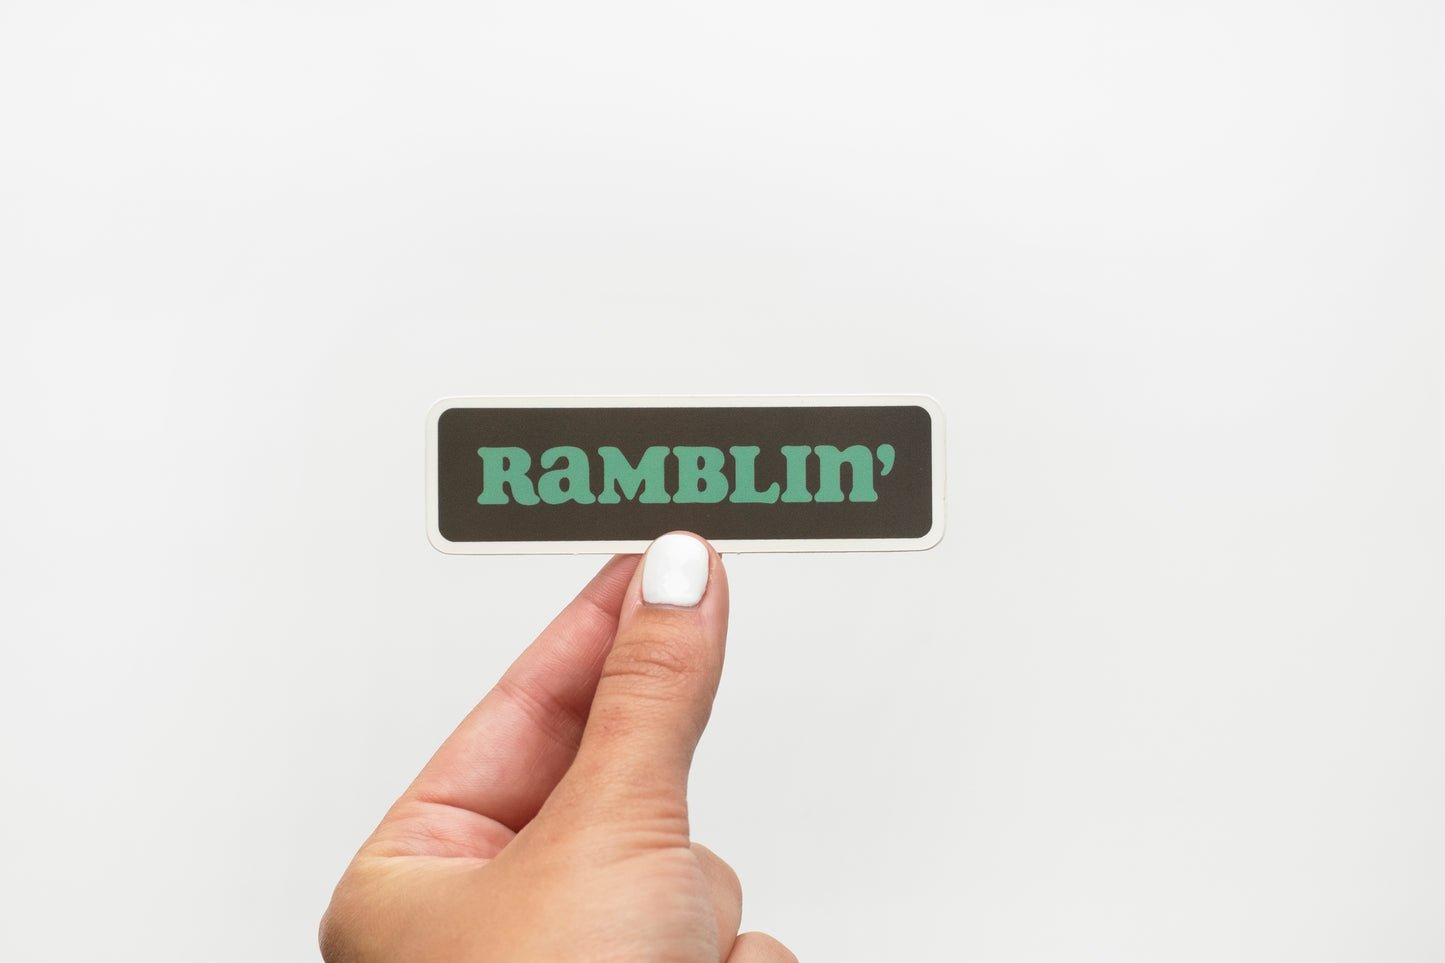 Ramblin' vinyl sticker